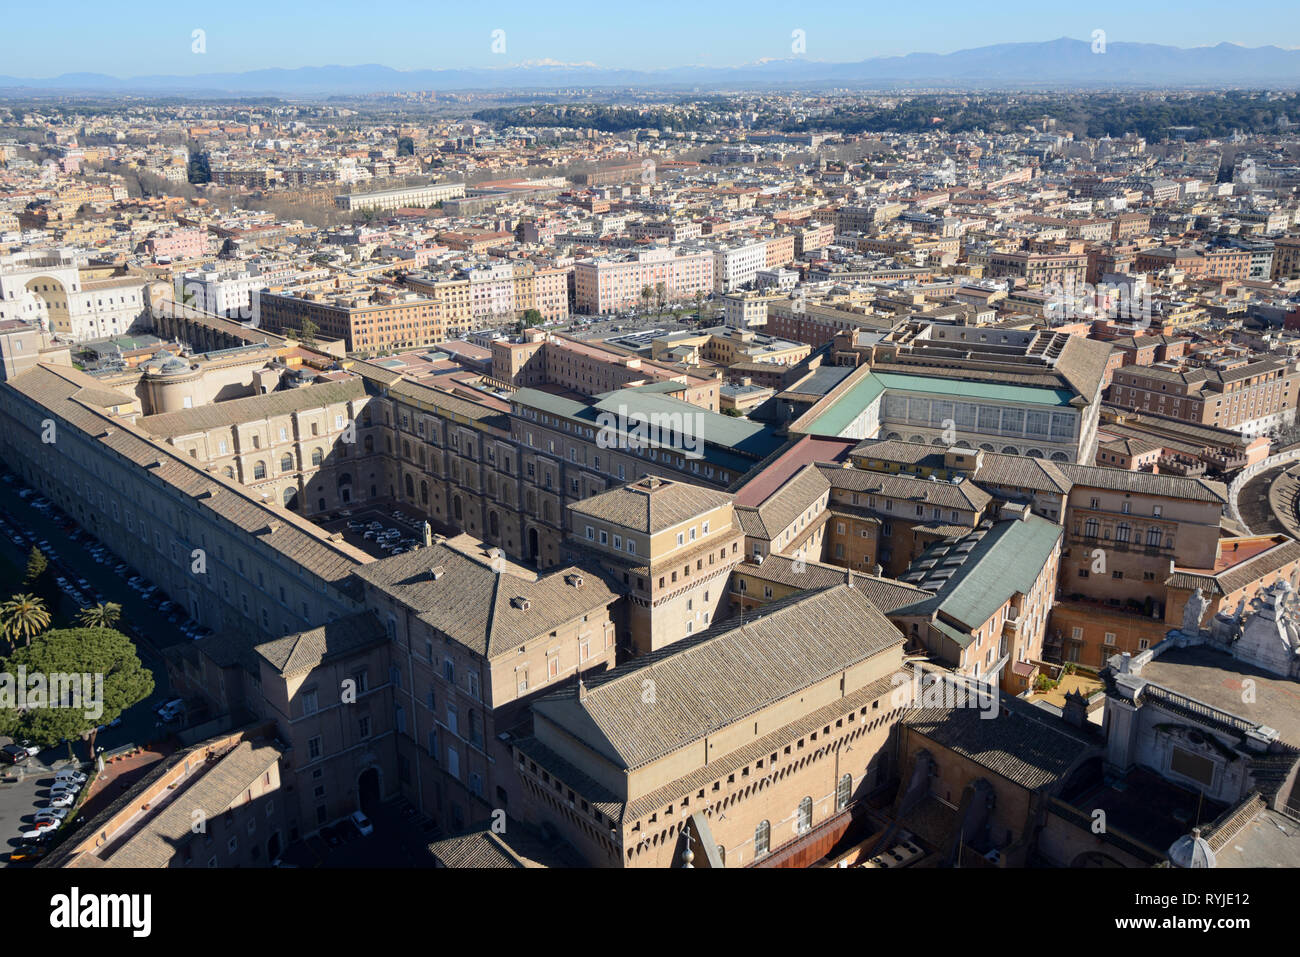 Vista aérea sobre los tejados de los Museos Vaticanos tomada desde la plataforma de observación en torno a la Cúpula de la basílica de Saint Perters Roma Italia Foto de stock